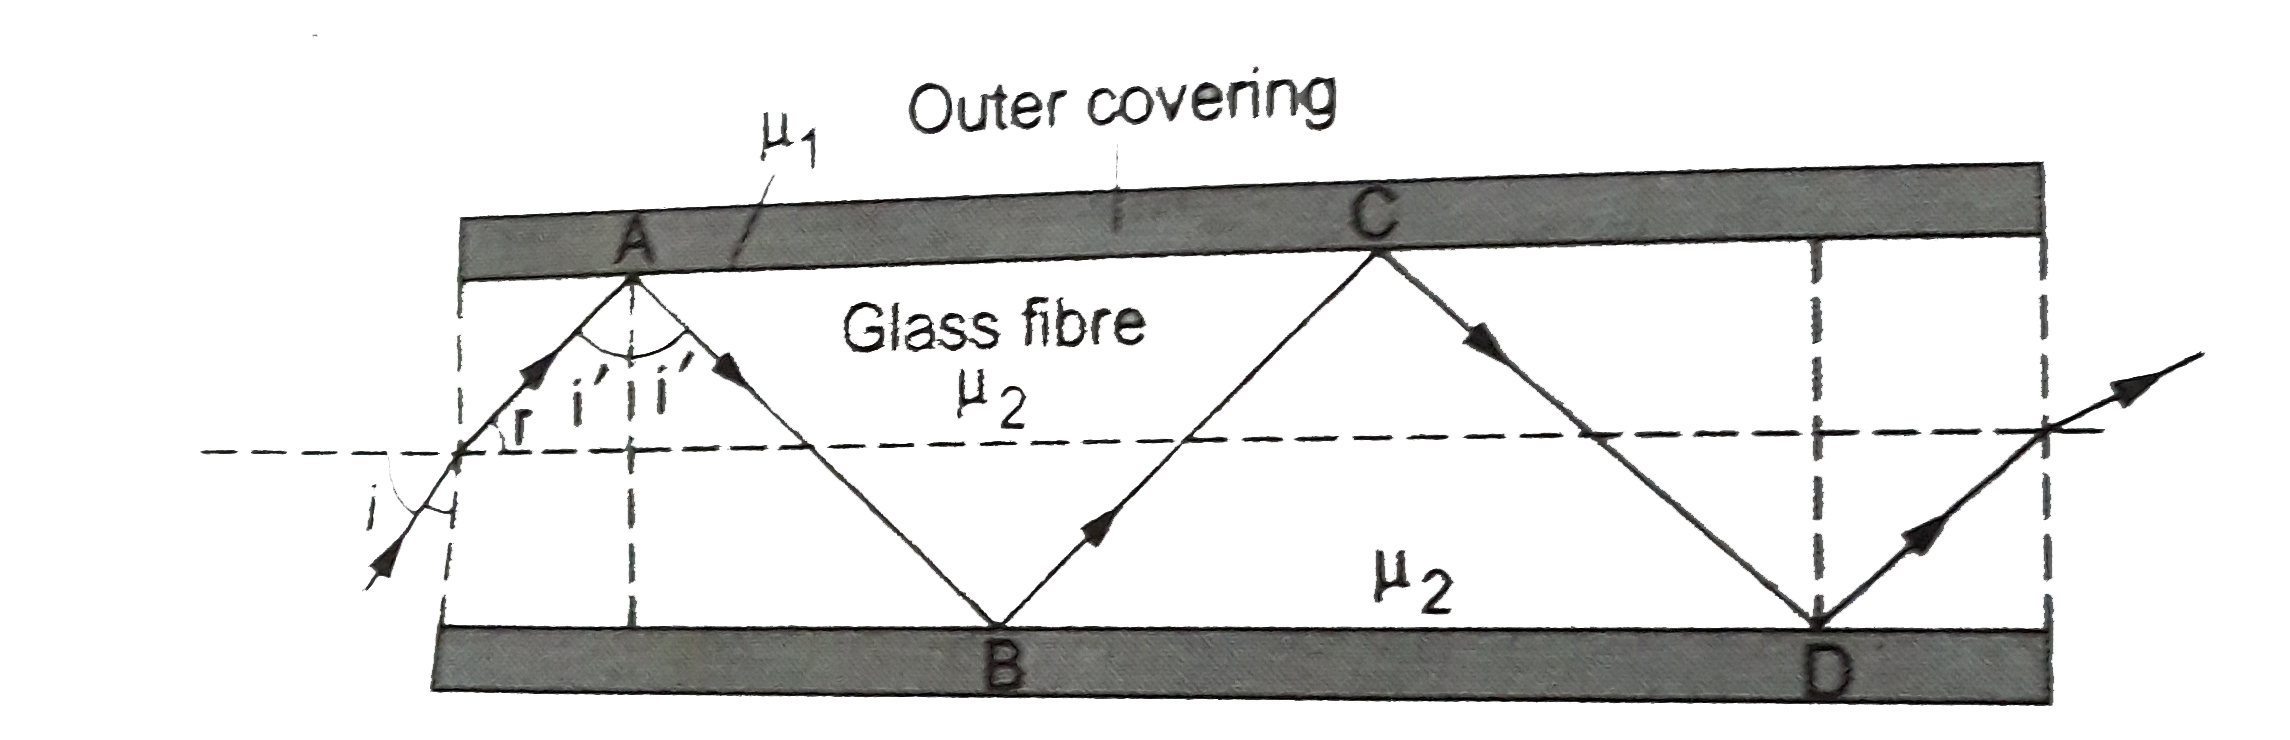 (a ) चित्र में अपवर्तनांक  1.68 के काँच तंतु से बनी किसी प्रकाश नालिका का अनुप्रस्थ परिच्छेद  दर्शाया गया है। नलिका का बाह्य आवरण ( outer covering ) 1.44 अपवर्तनांक  के पदार्थ का बना है। नालिका के अक्ष से आपतित किरणों के कोनों का परिसर ( range ), जिनके लिए चित्र में दर्शाए अनुसार नालिका के भीतर पूर्ण परावर्तन  होते है, ज्ञात कीजिए।       (b ) यदि पाइप पर बाह्य आवरण न हो, तो क्या होगा ?